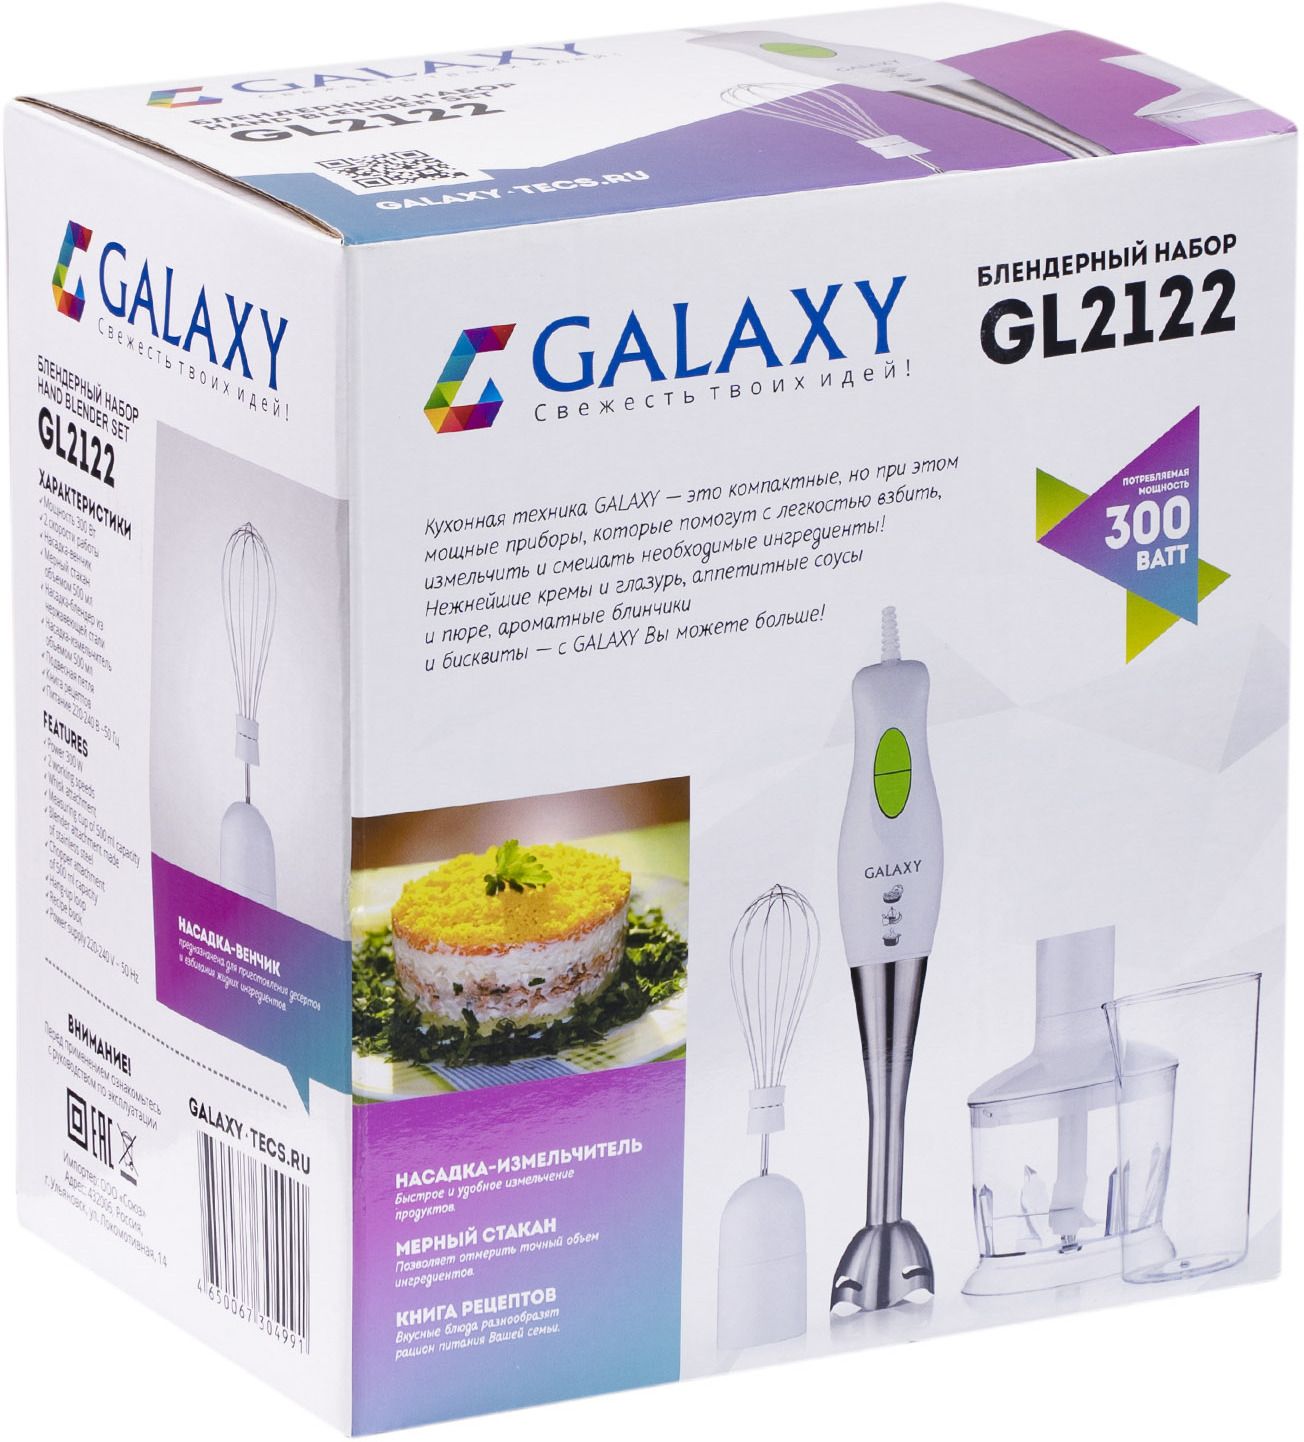  Galaxy GL 2122